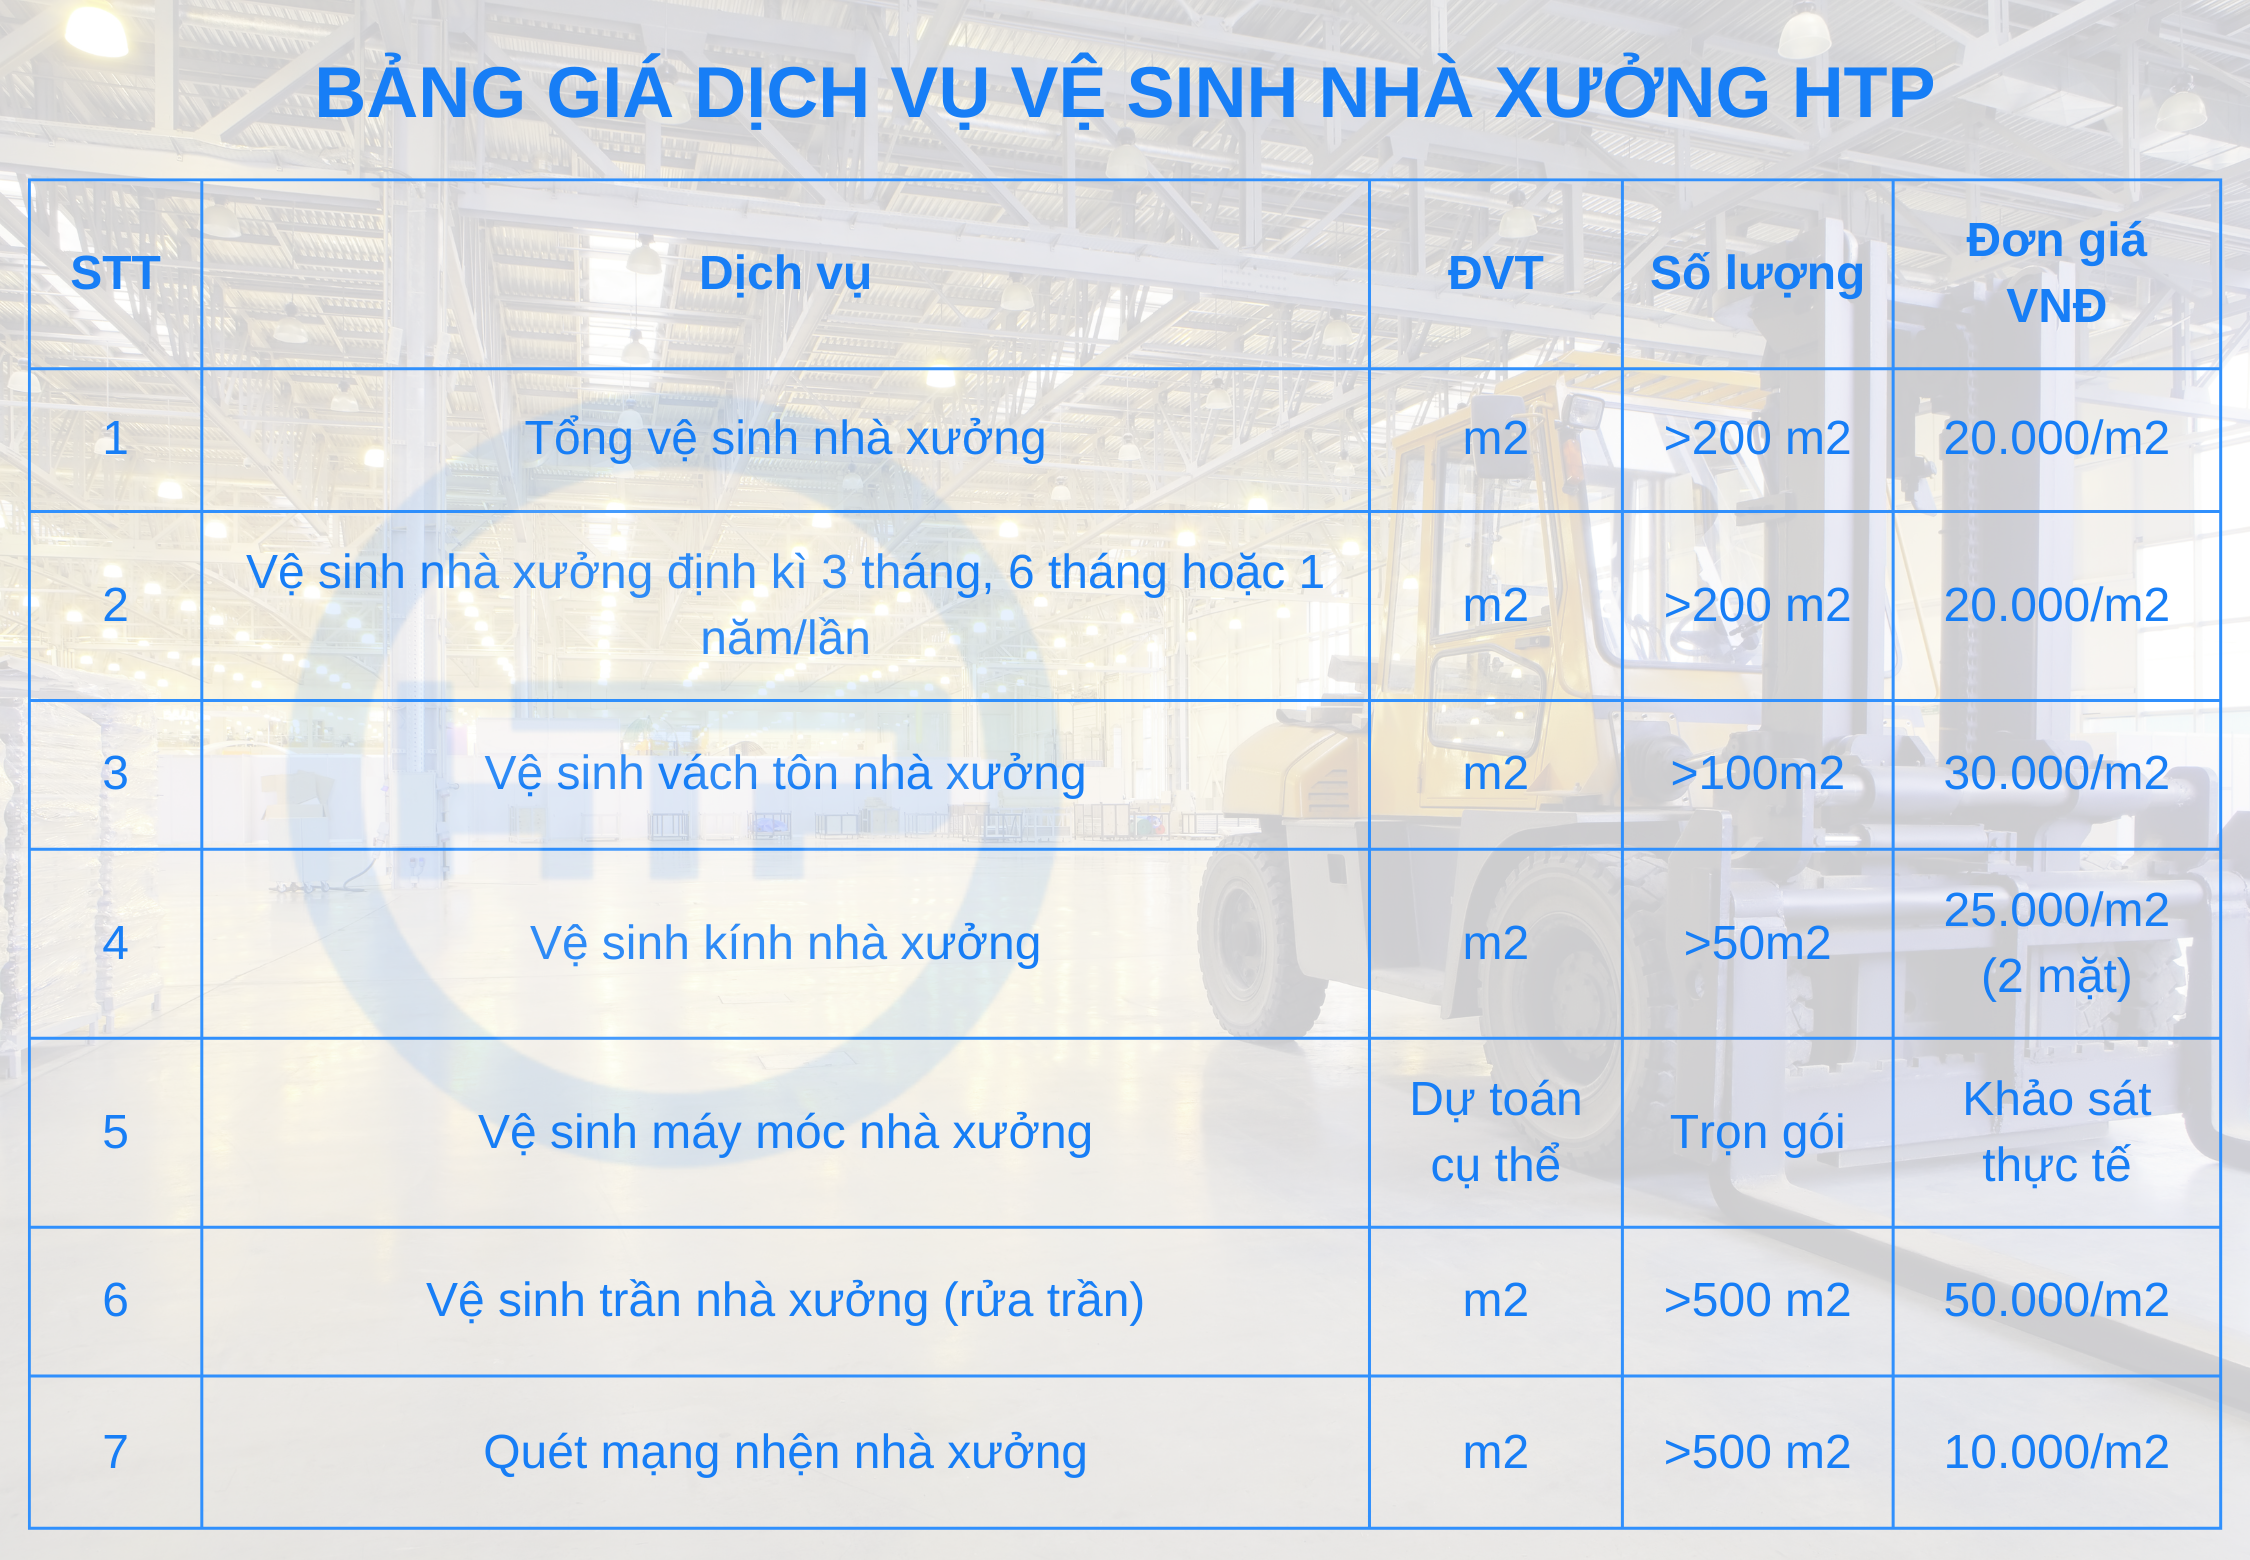 Bảng báo giá dịch vụ vệ sinh nhà xưởng mới nhất của Hồng Tâm Phát